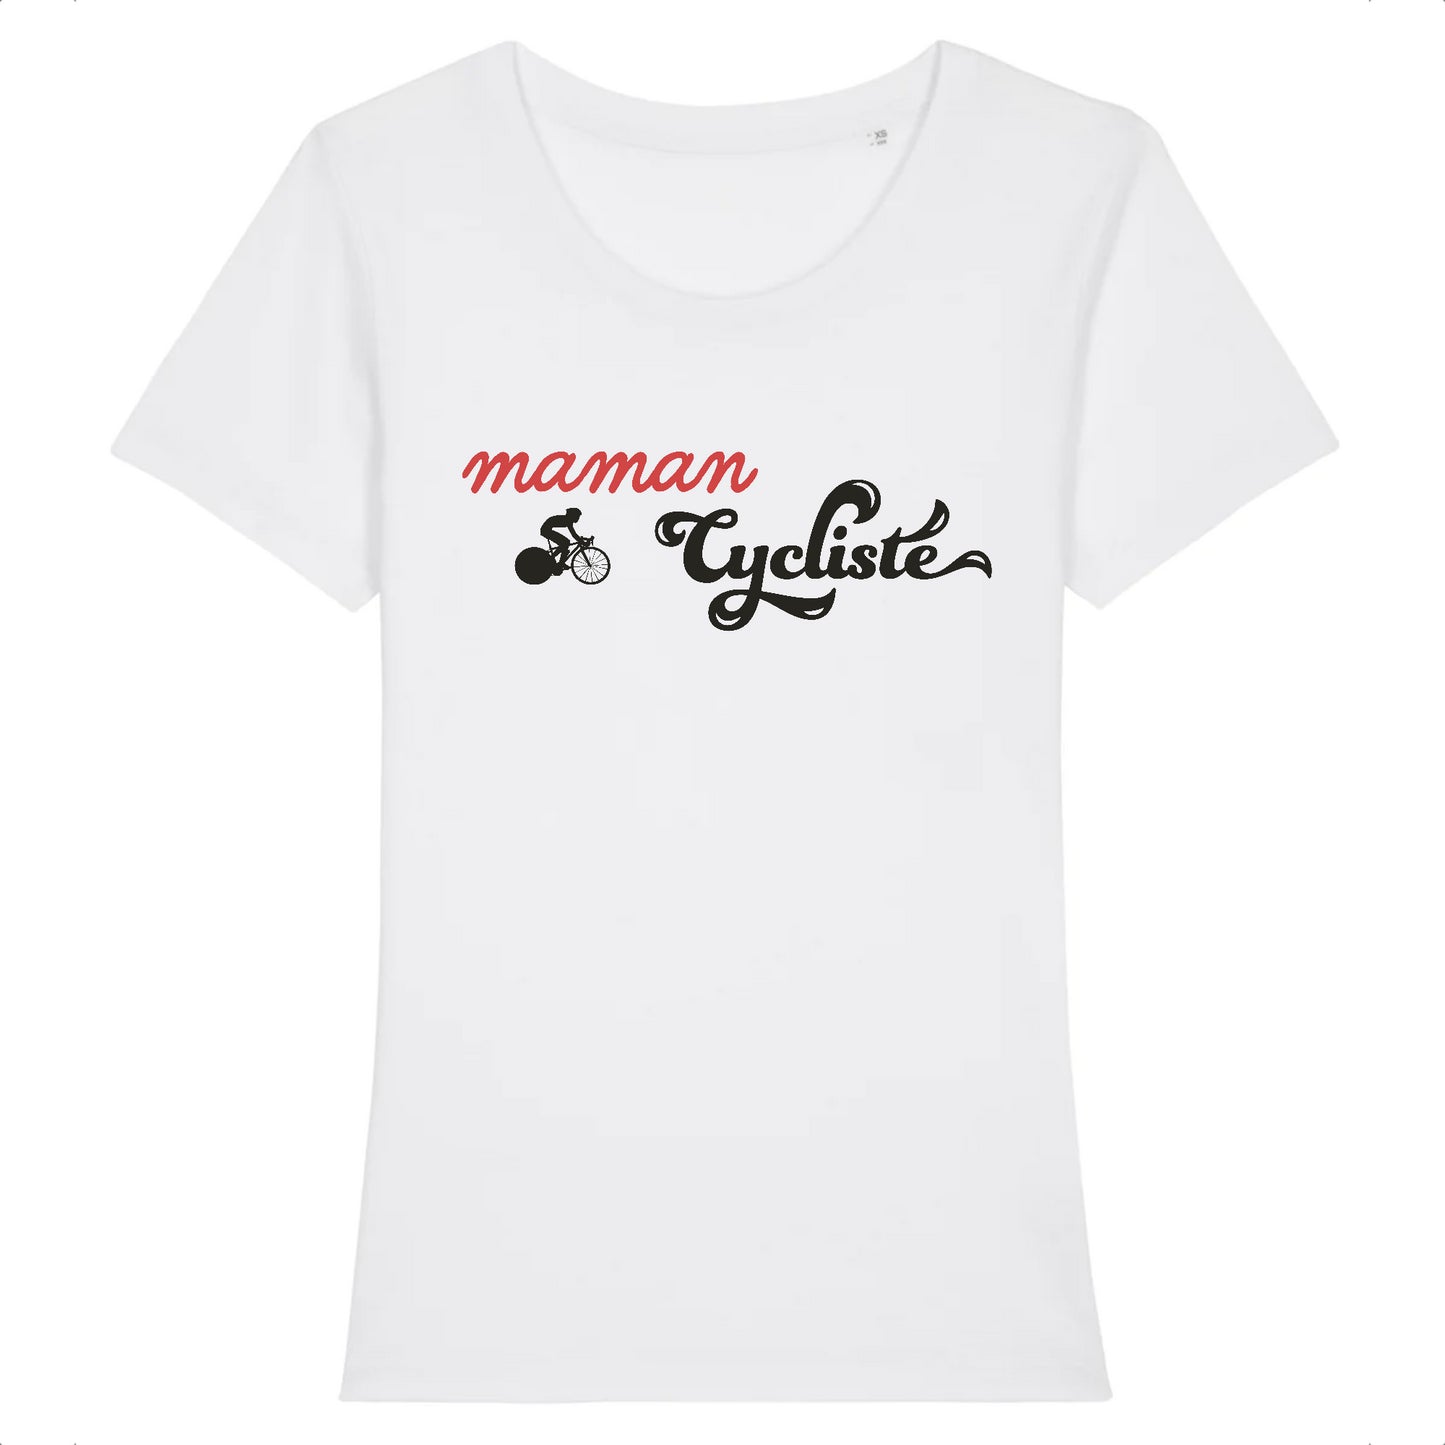 Blanc - Le t-shirt "Maman Cycliste" en coton bio est un hommage à toutes les mamans passionnées de vélo, avec son design captivant mettant en avant le mot "Maman" en manuscrit rouge, une silhouette gracieuse de cycliste et le mot "Cycliste" en typographie vintage bleu foncé.